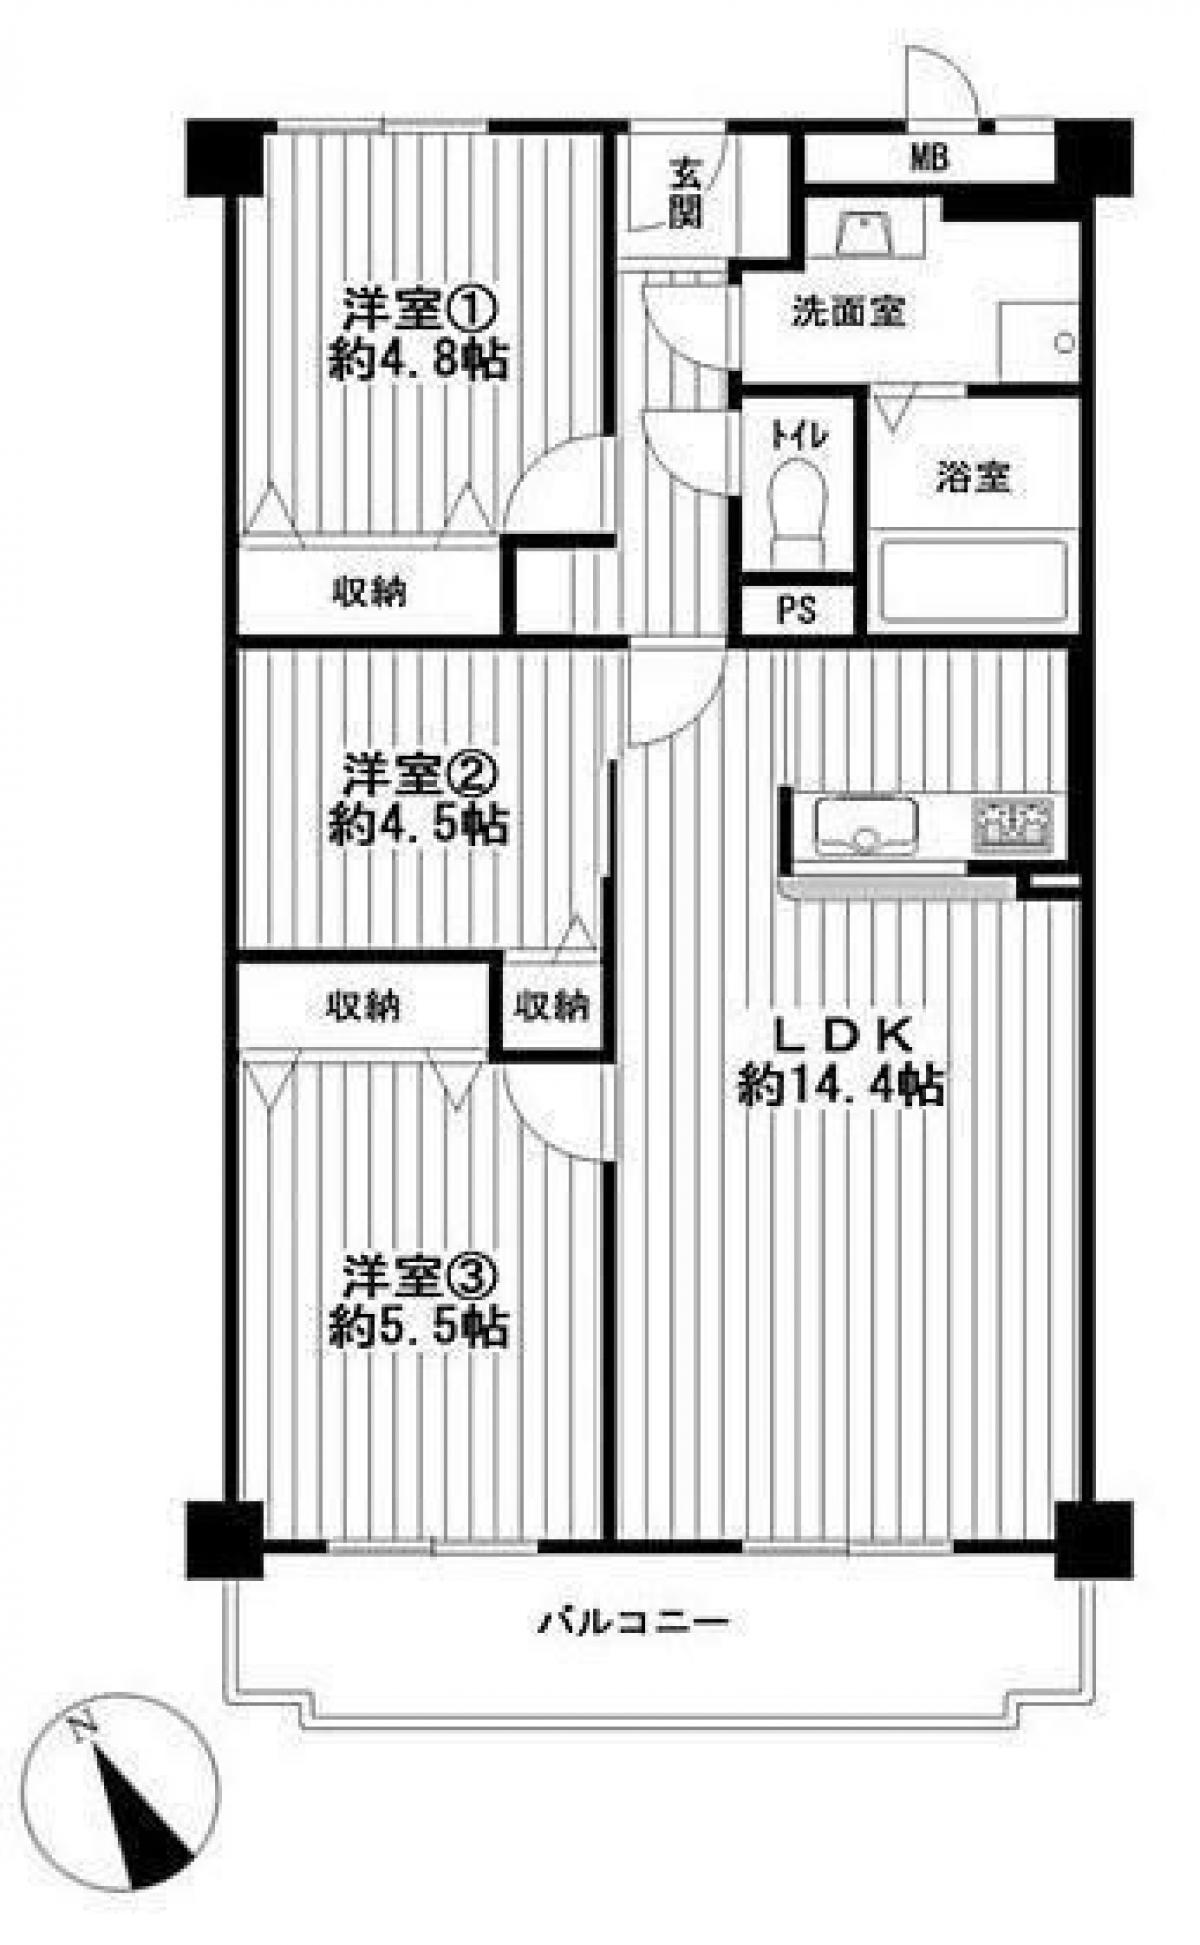 Picture of Apartment For Sale in Osaka Shi Taisho Ku, Osaka, Japan